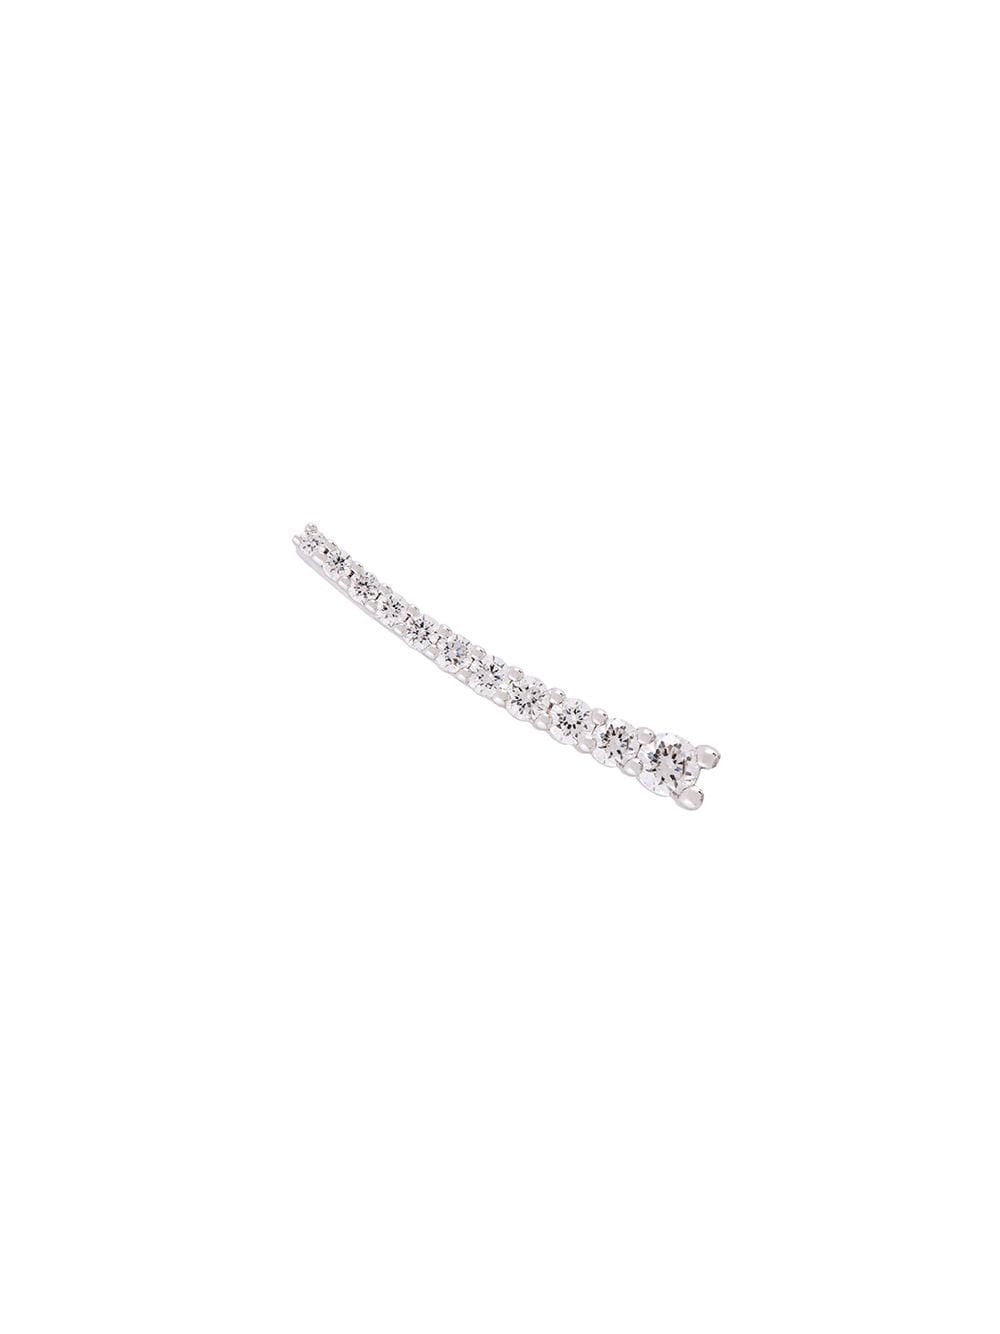 ALINKA 18kt white gold DASHA SUPER FINE diamond right cuff earring - Metallic von ALINKA